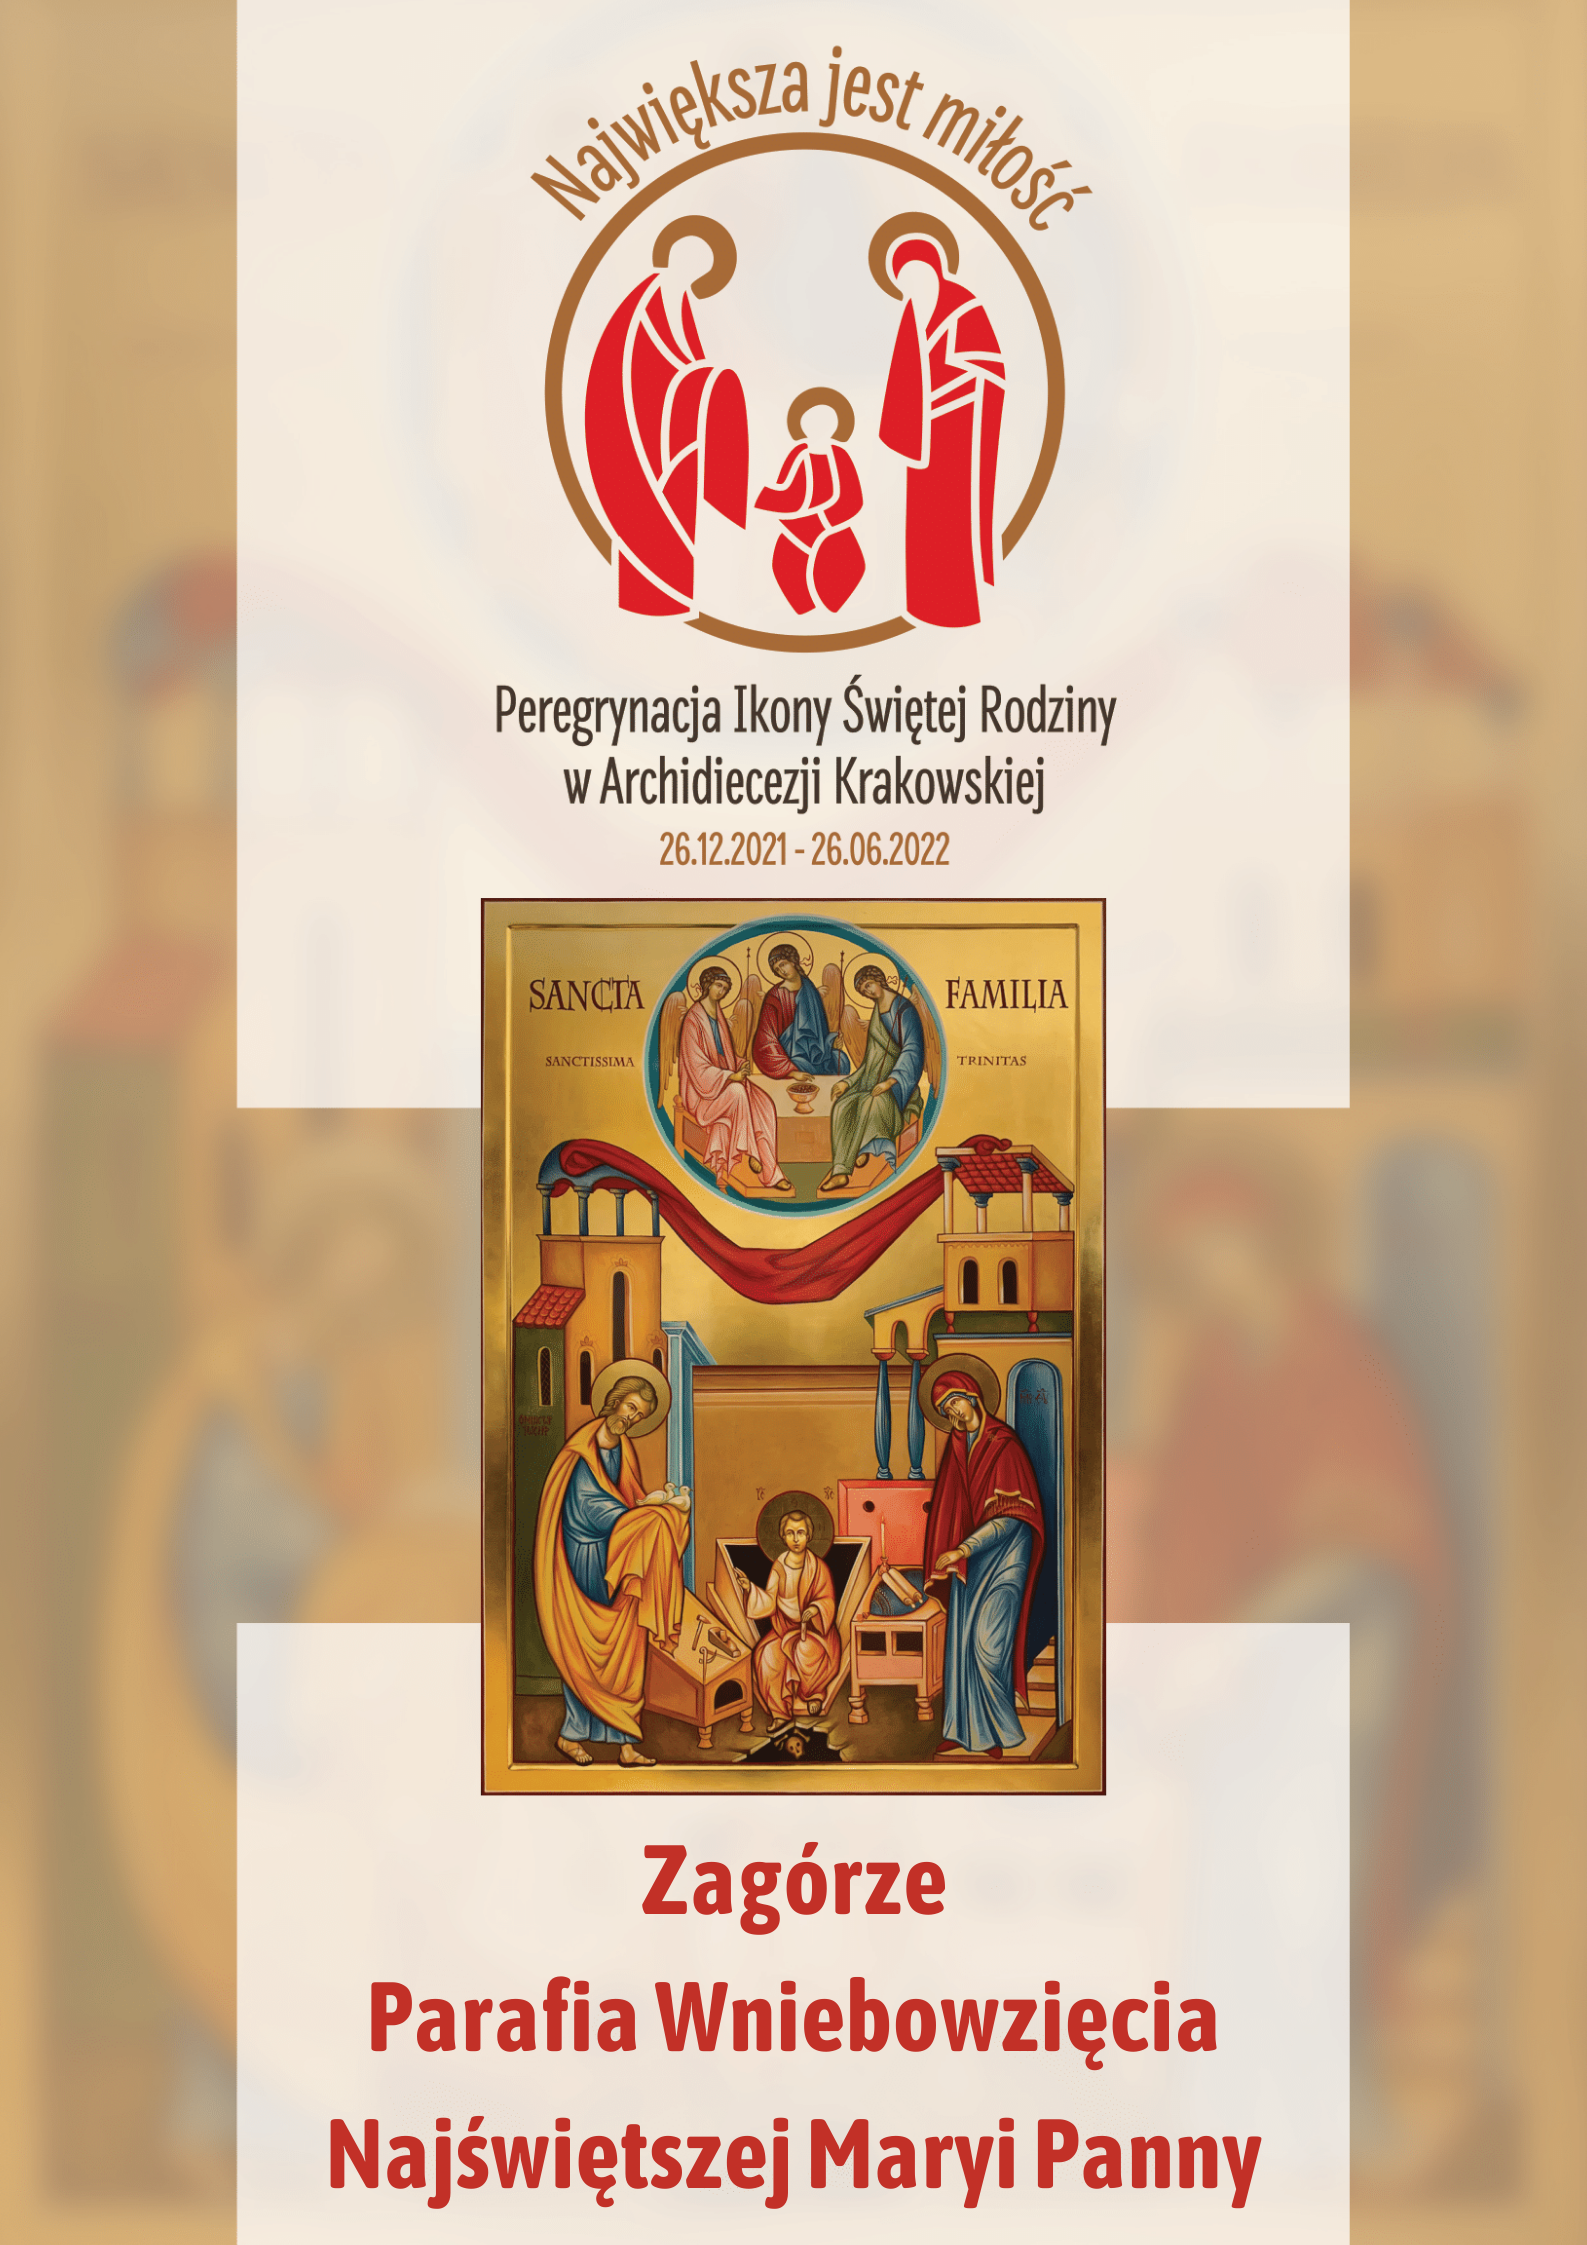 Ikona Świętej Rodziny w parafii Wniebowzięcia Najświętszej Maryi Panny w Zagórzu